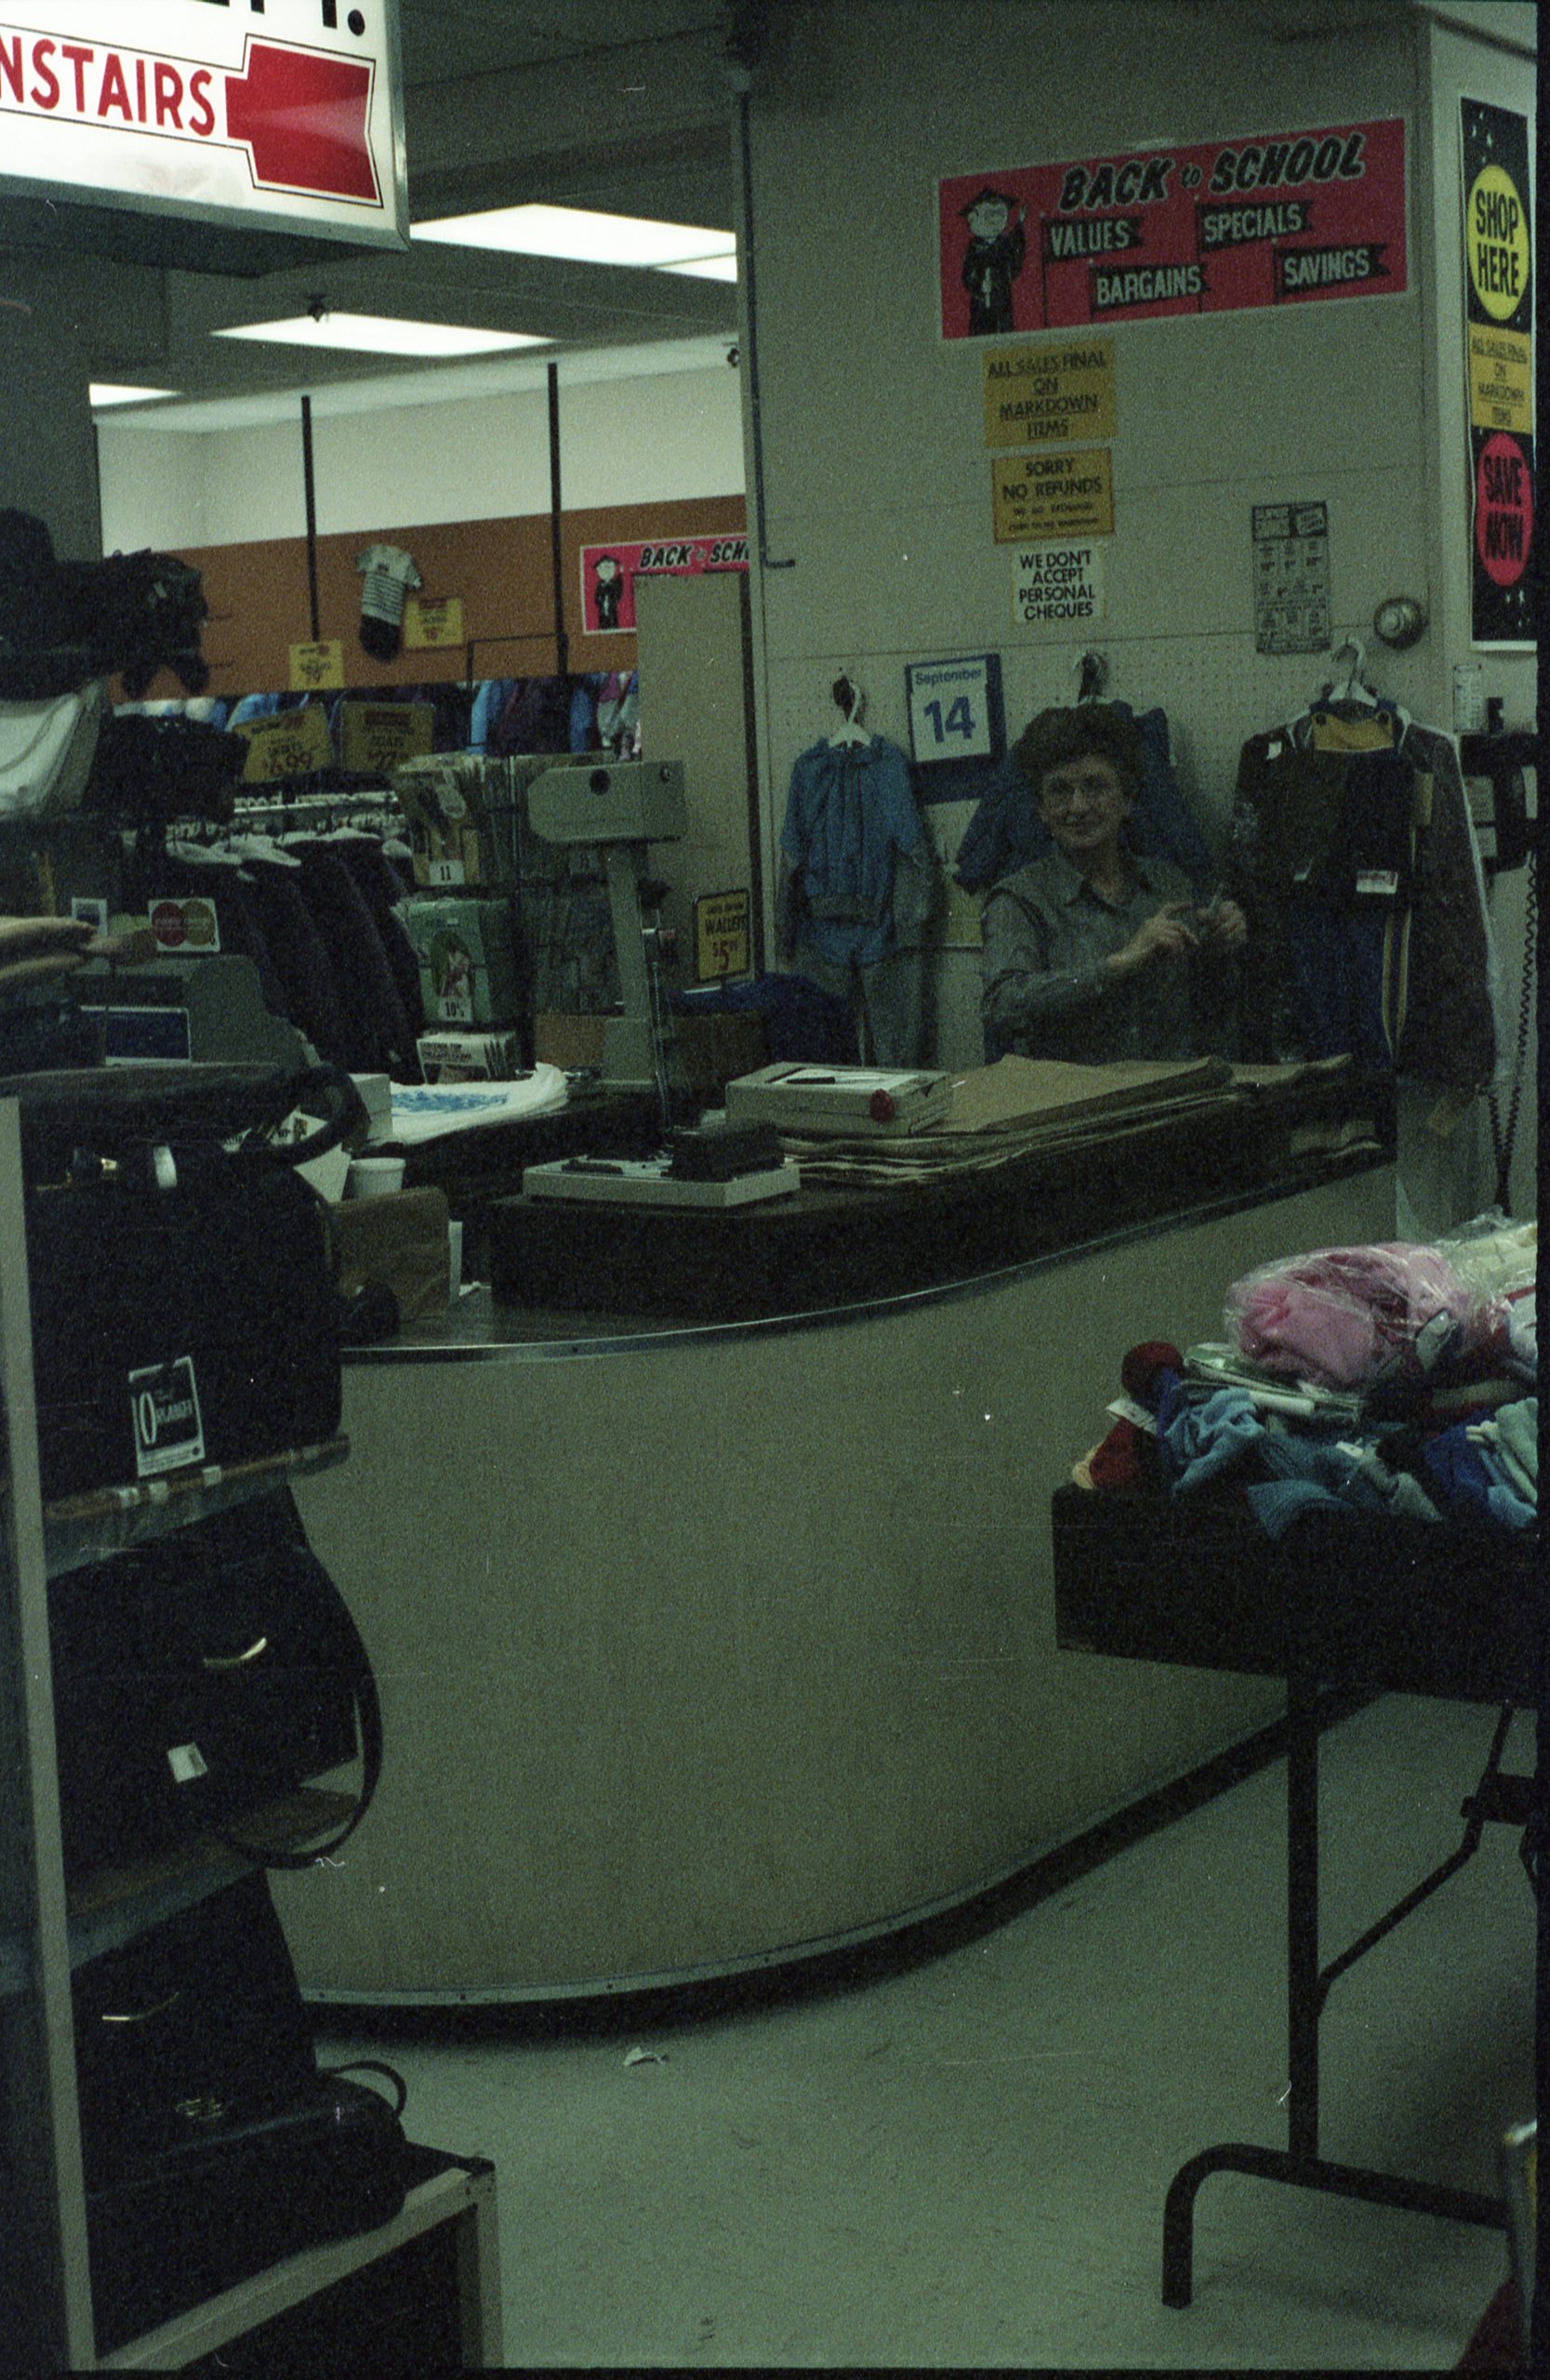 Une femme se tient derrière un comptoir incurvé, près de stands de sacs à main et de vêtements au premier plan.